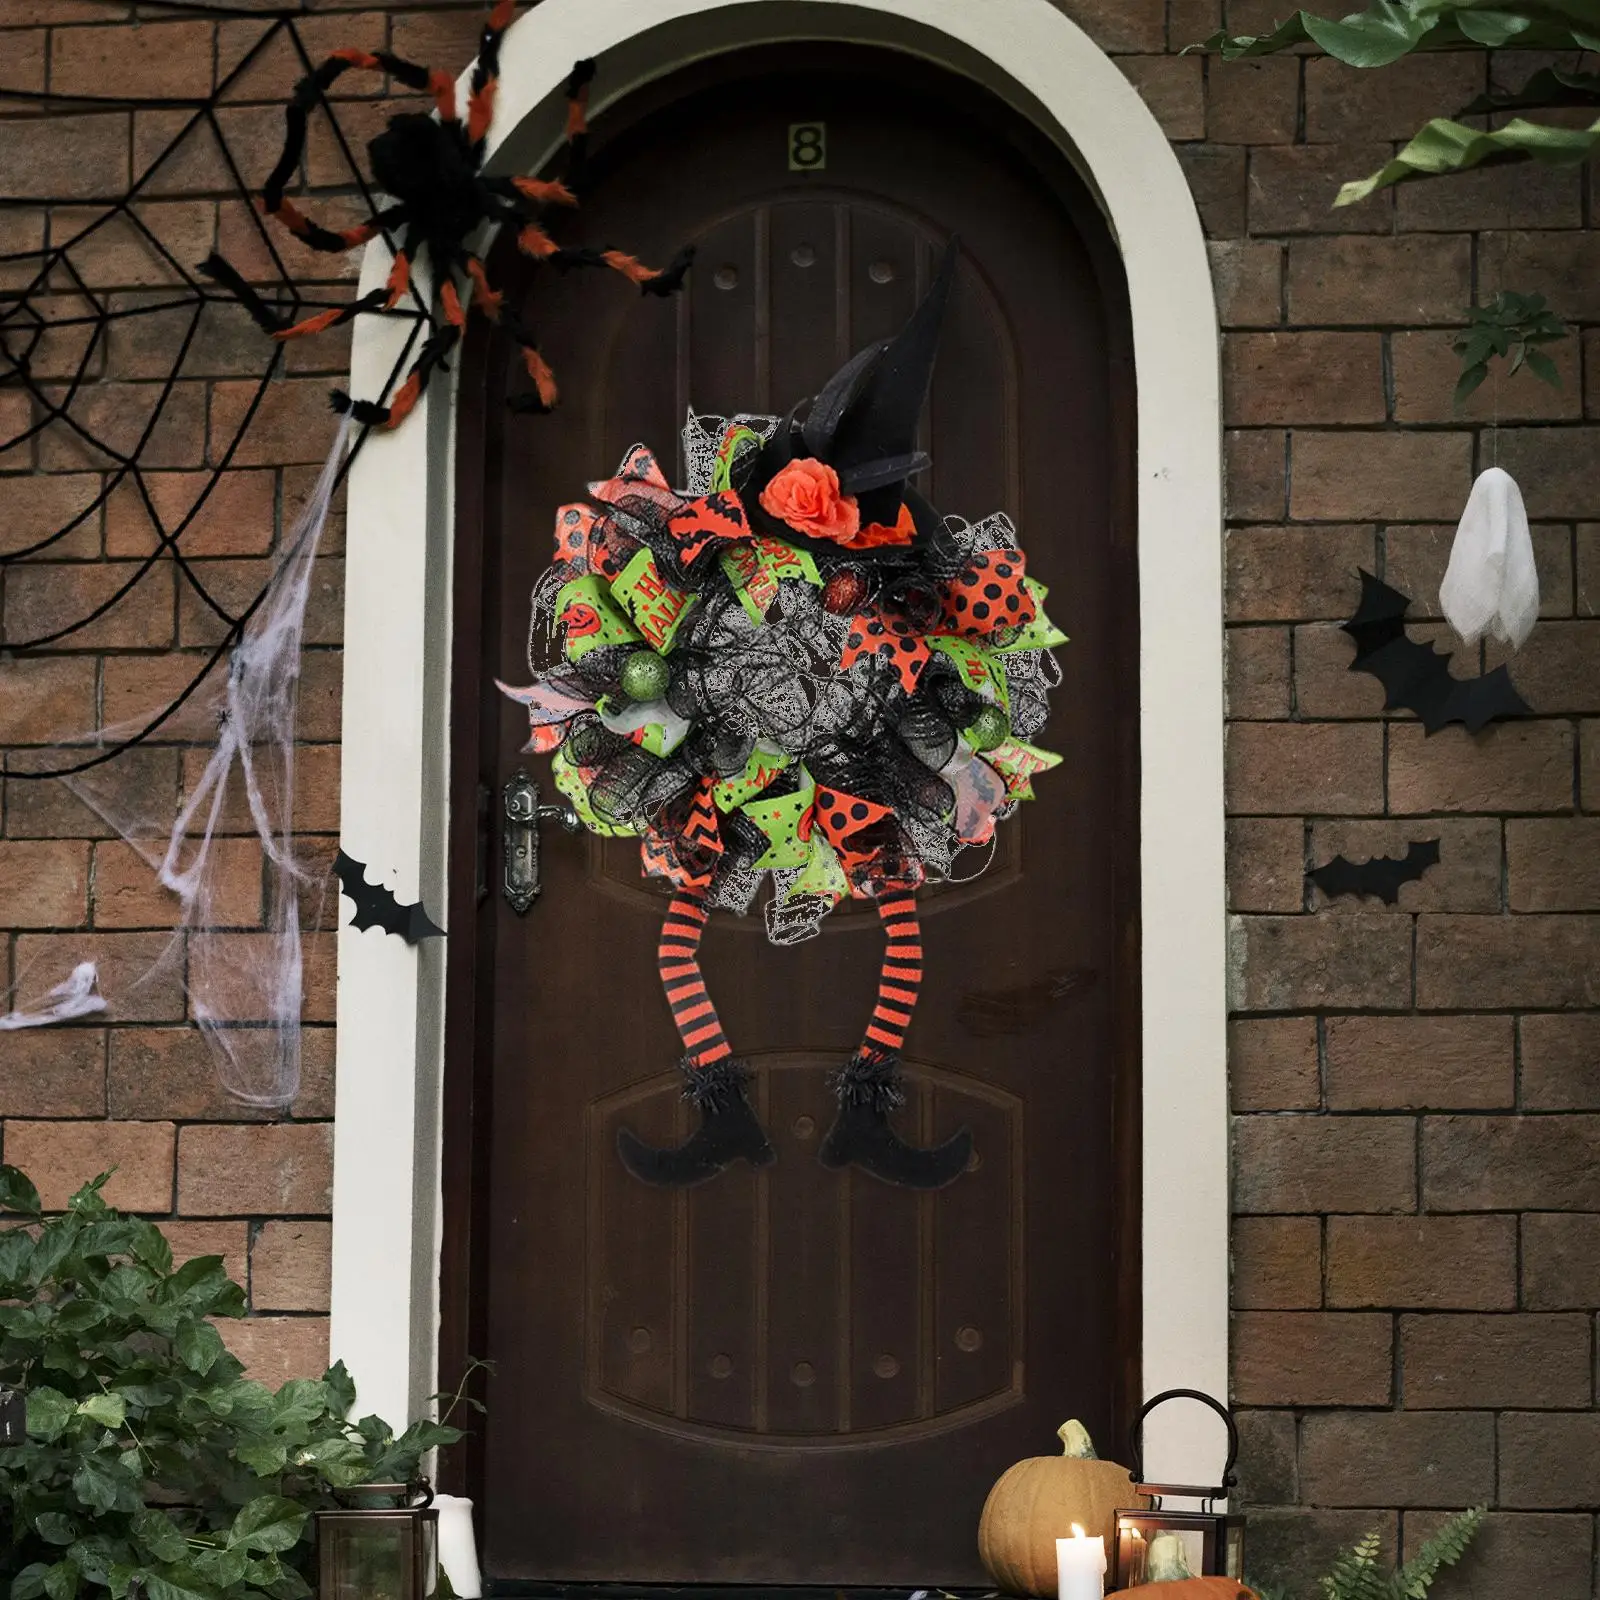 Garland Hanger Two Long Legs 75cmx40cm Decorative Halloween Wreath for Front Door for Haunted House Party Door Porch Halloween